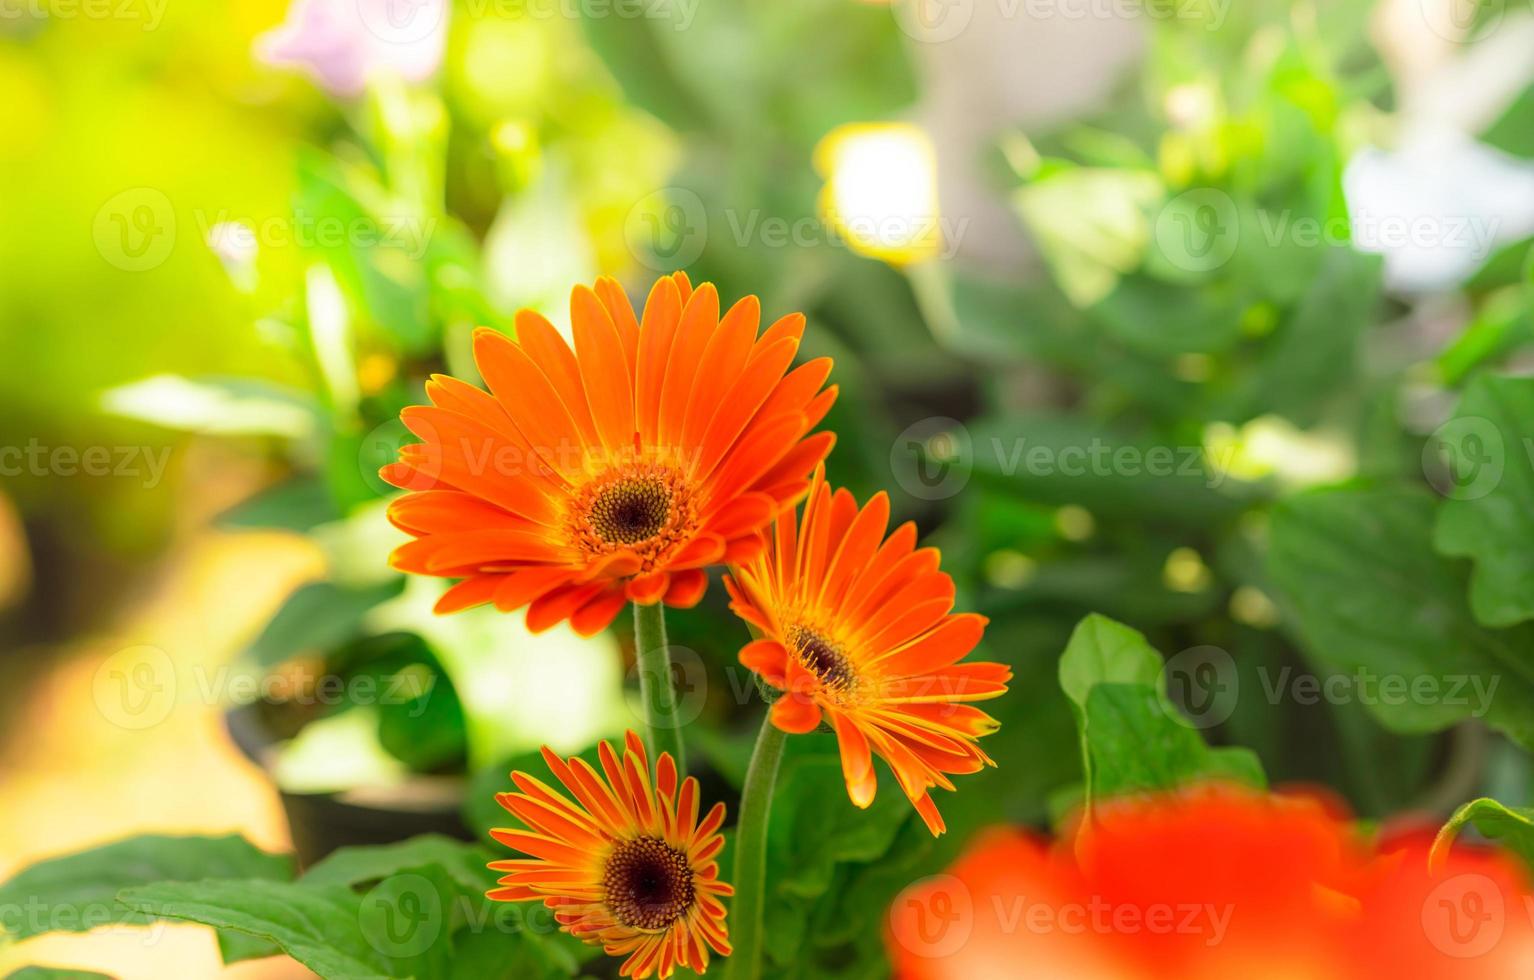 orange gerbera blomma på oskärpa bakgrund av gröna blad i trädgården. dekorativ trädgårdsväxt eller som snittblommor. milda orange kronblad av gerbera. blomsterträdgård med morgonsol. natur närbild. foto